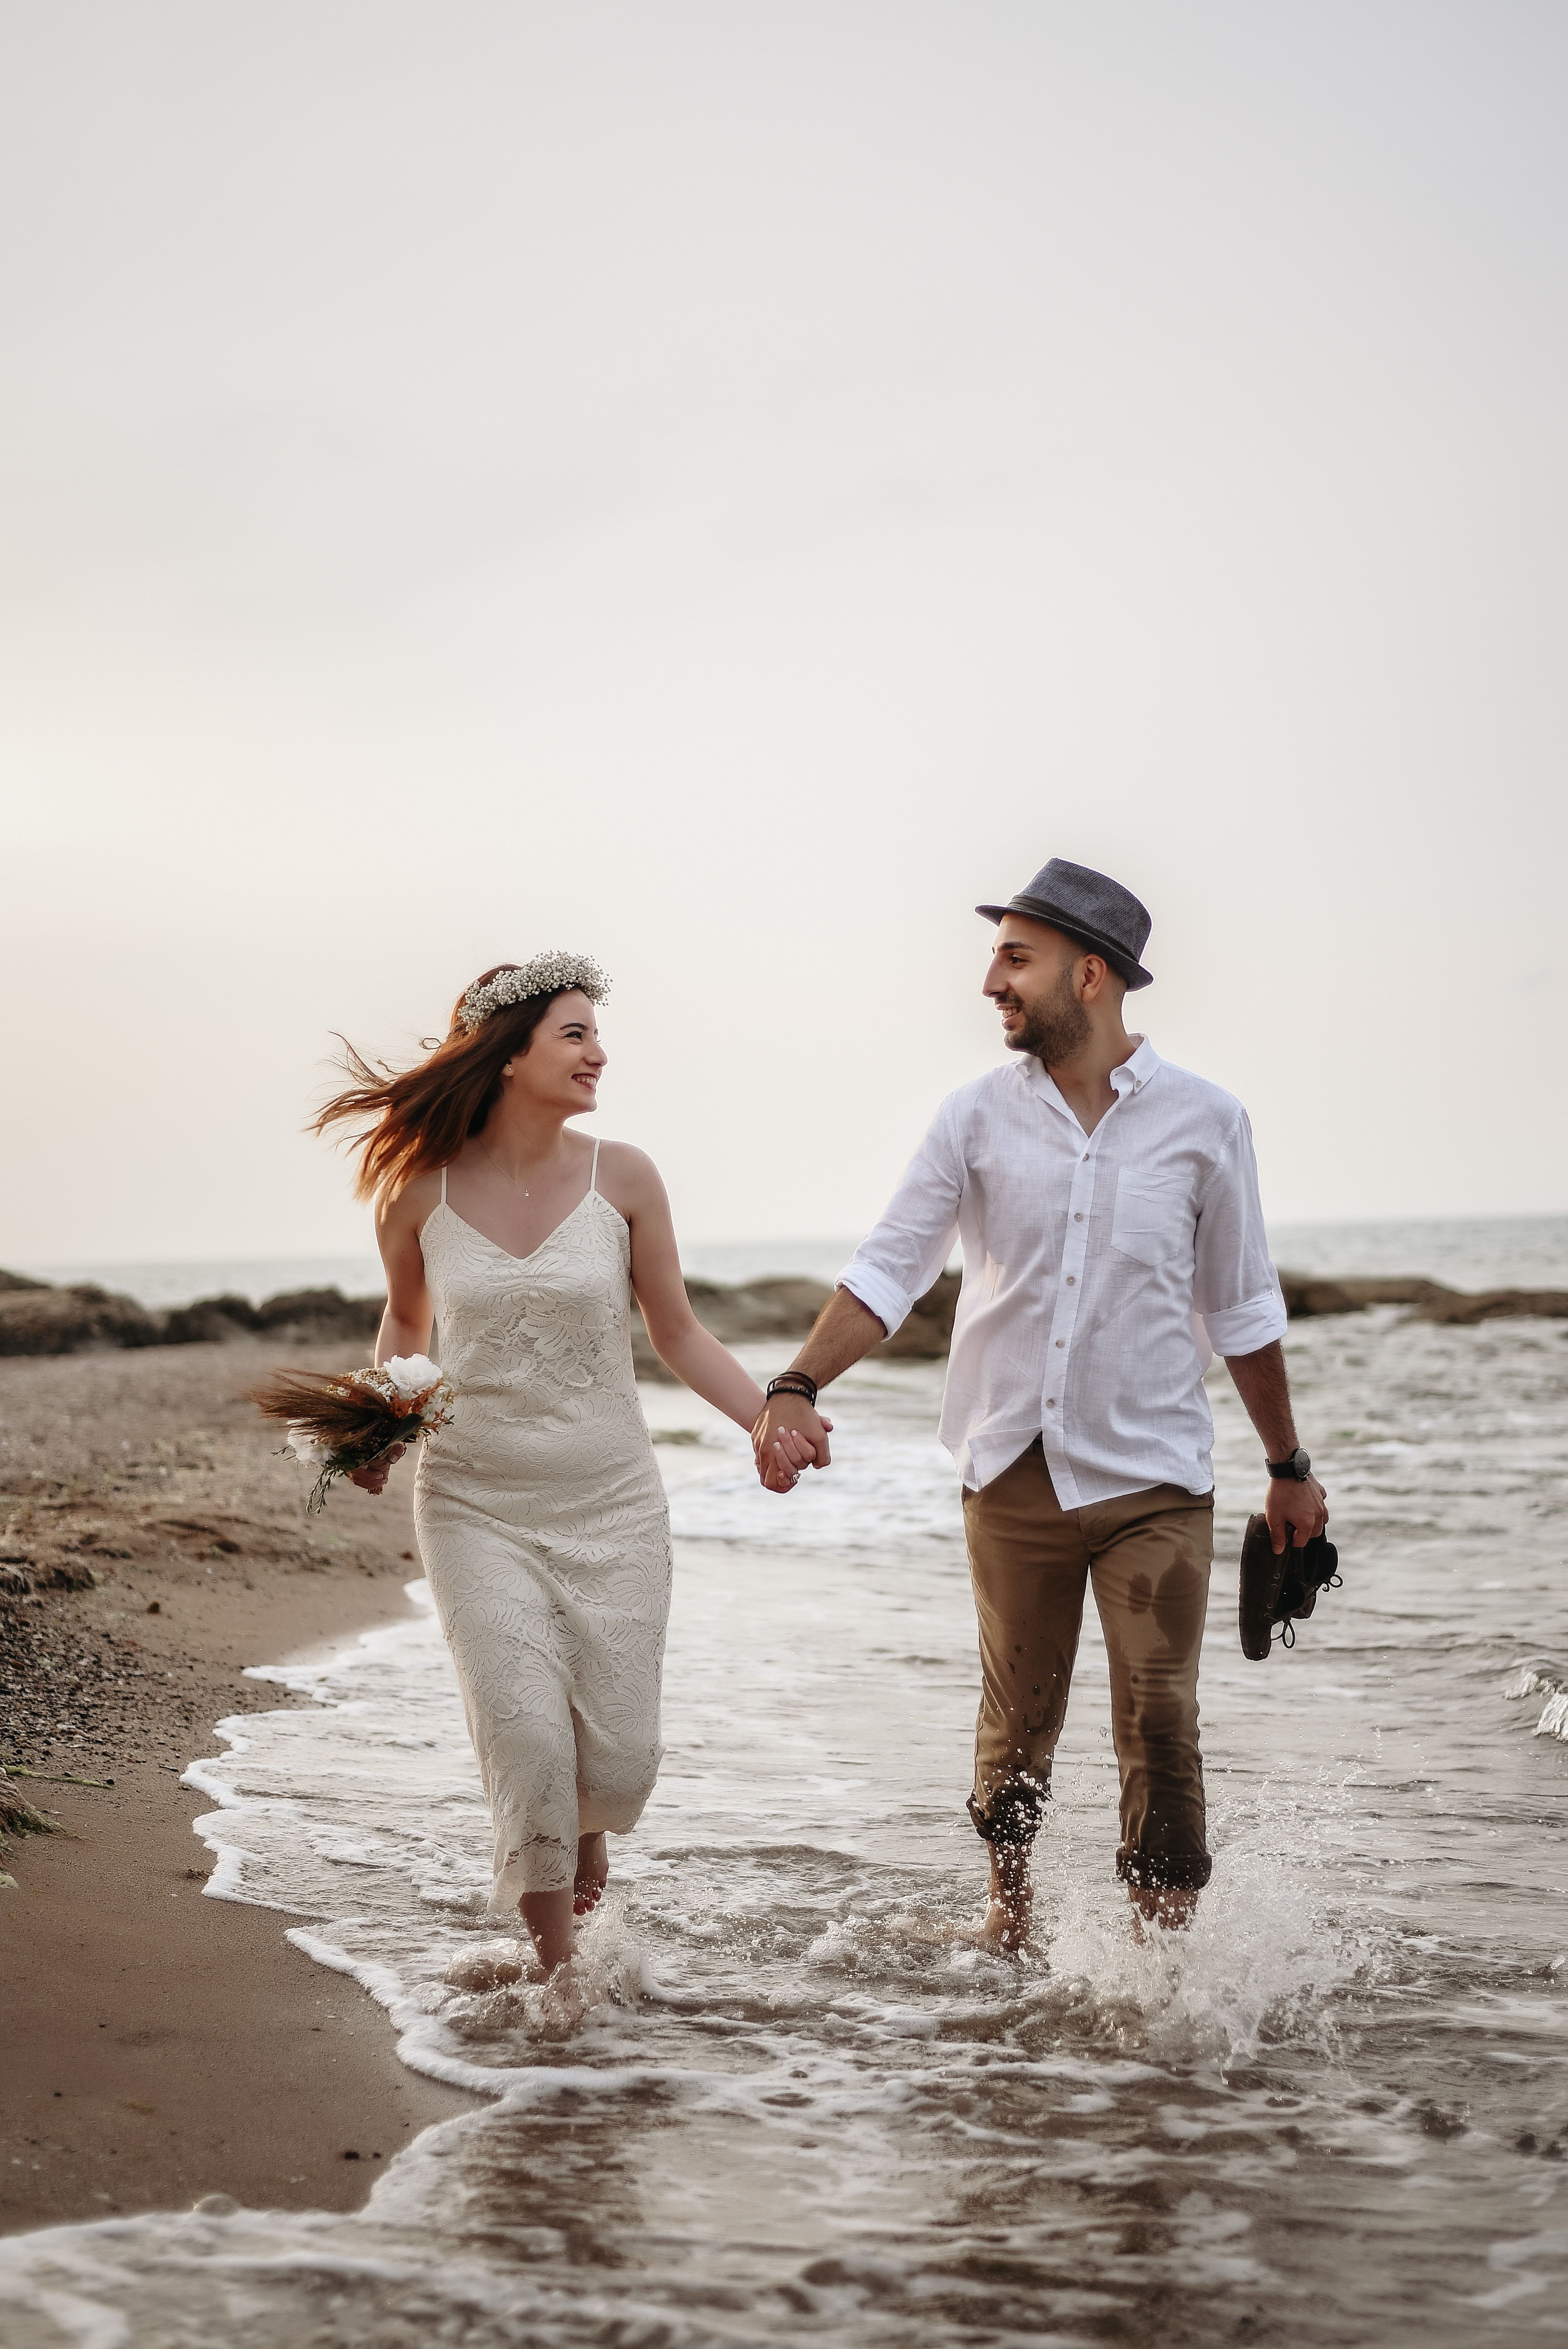 Happy couple walking on seaside · Free